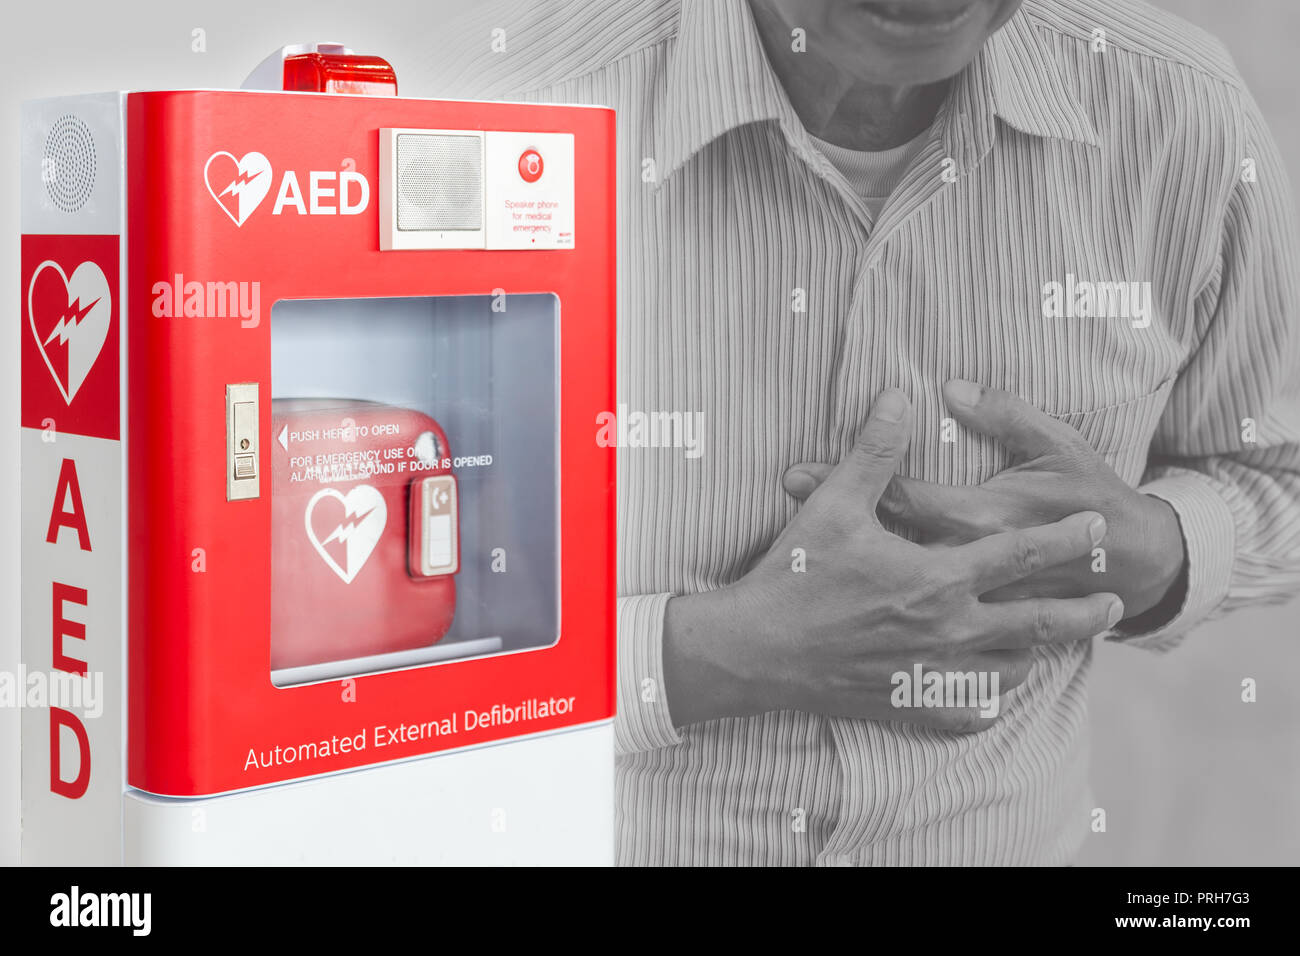 AED o Defibrillatore automatico esterno primo dispositivo di ausilio per aiutare le persone a ictus o attacco di cuore in uno spazio pubblico Foto Stock